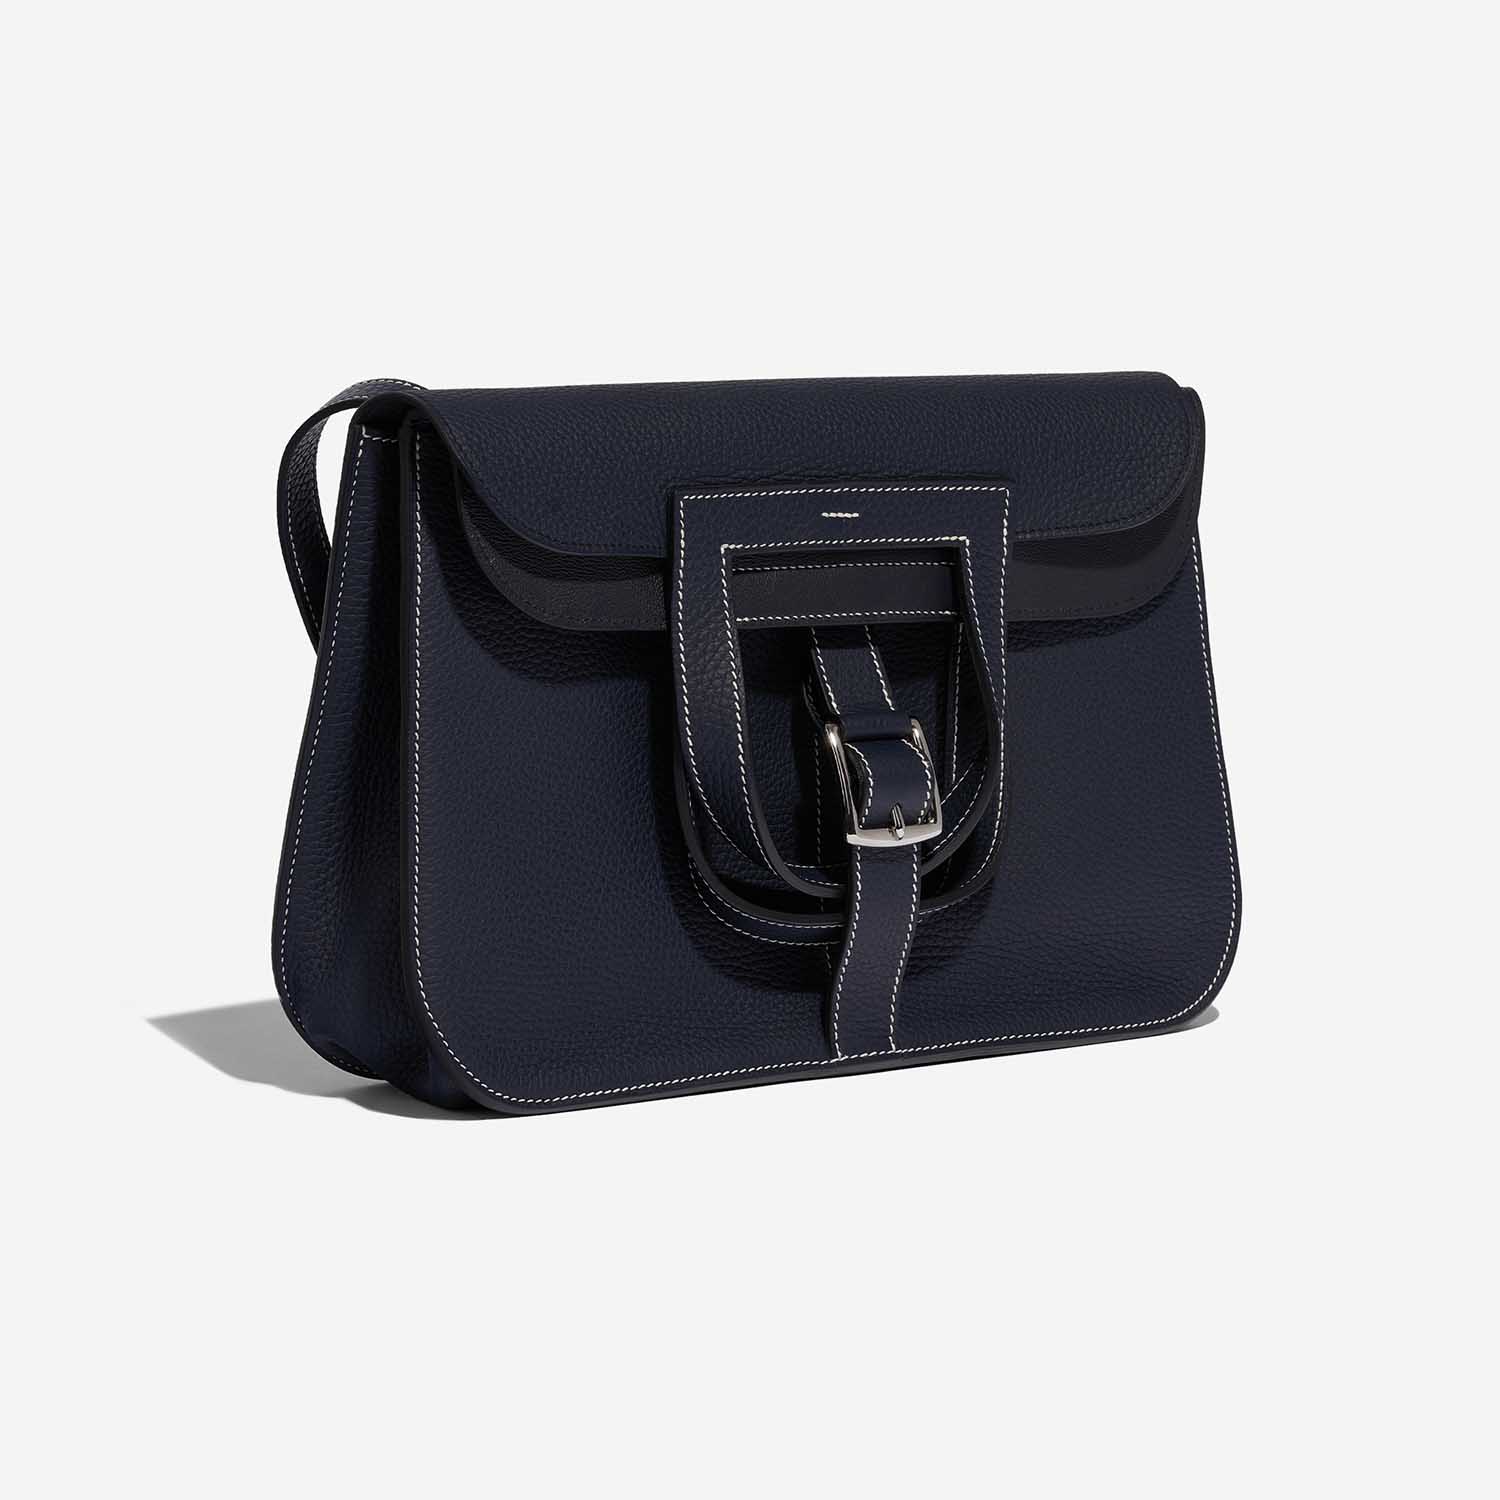 Gebrauchte Hermès Tasche Halzan 31 Clemence Bleu Nuit / Schwarz Schwarz, Blaue Seitenfront | Verkaufen Sie Ihre Designer-Tasche auf Saclab.com